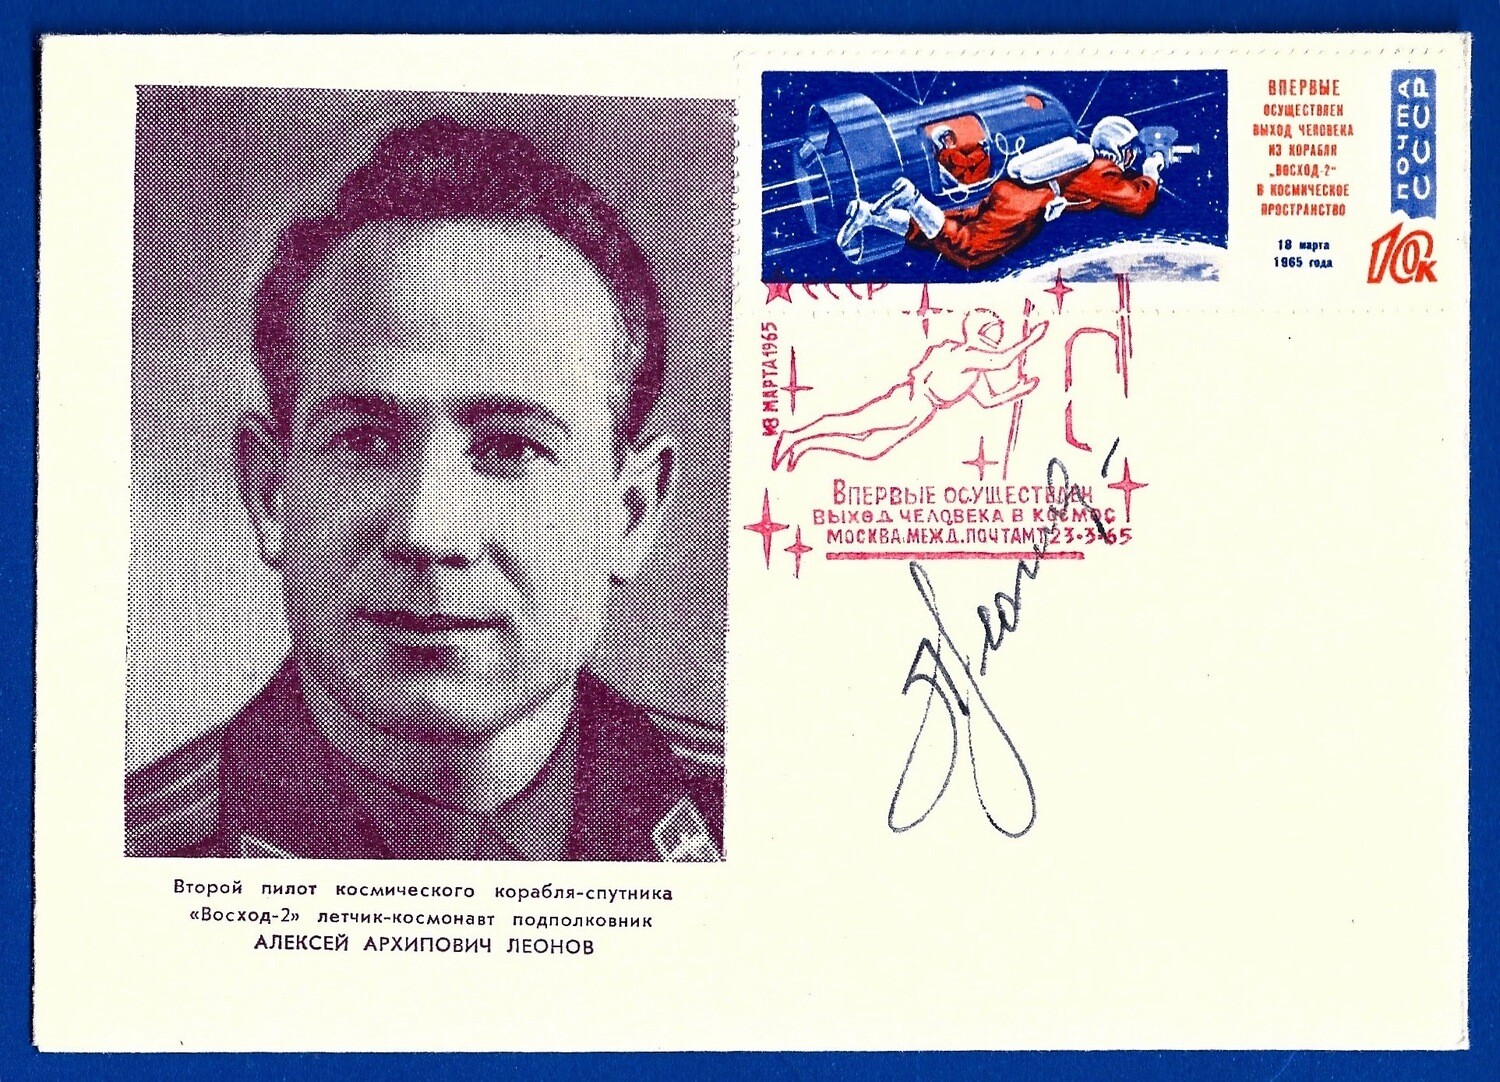 Alexei Leonov Soviet cosmonaut signed picture